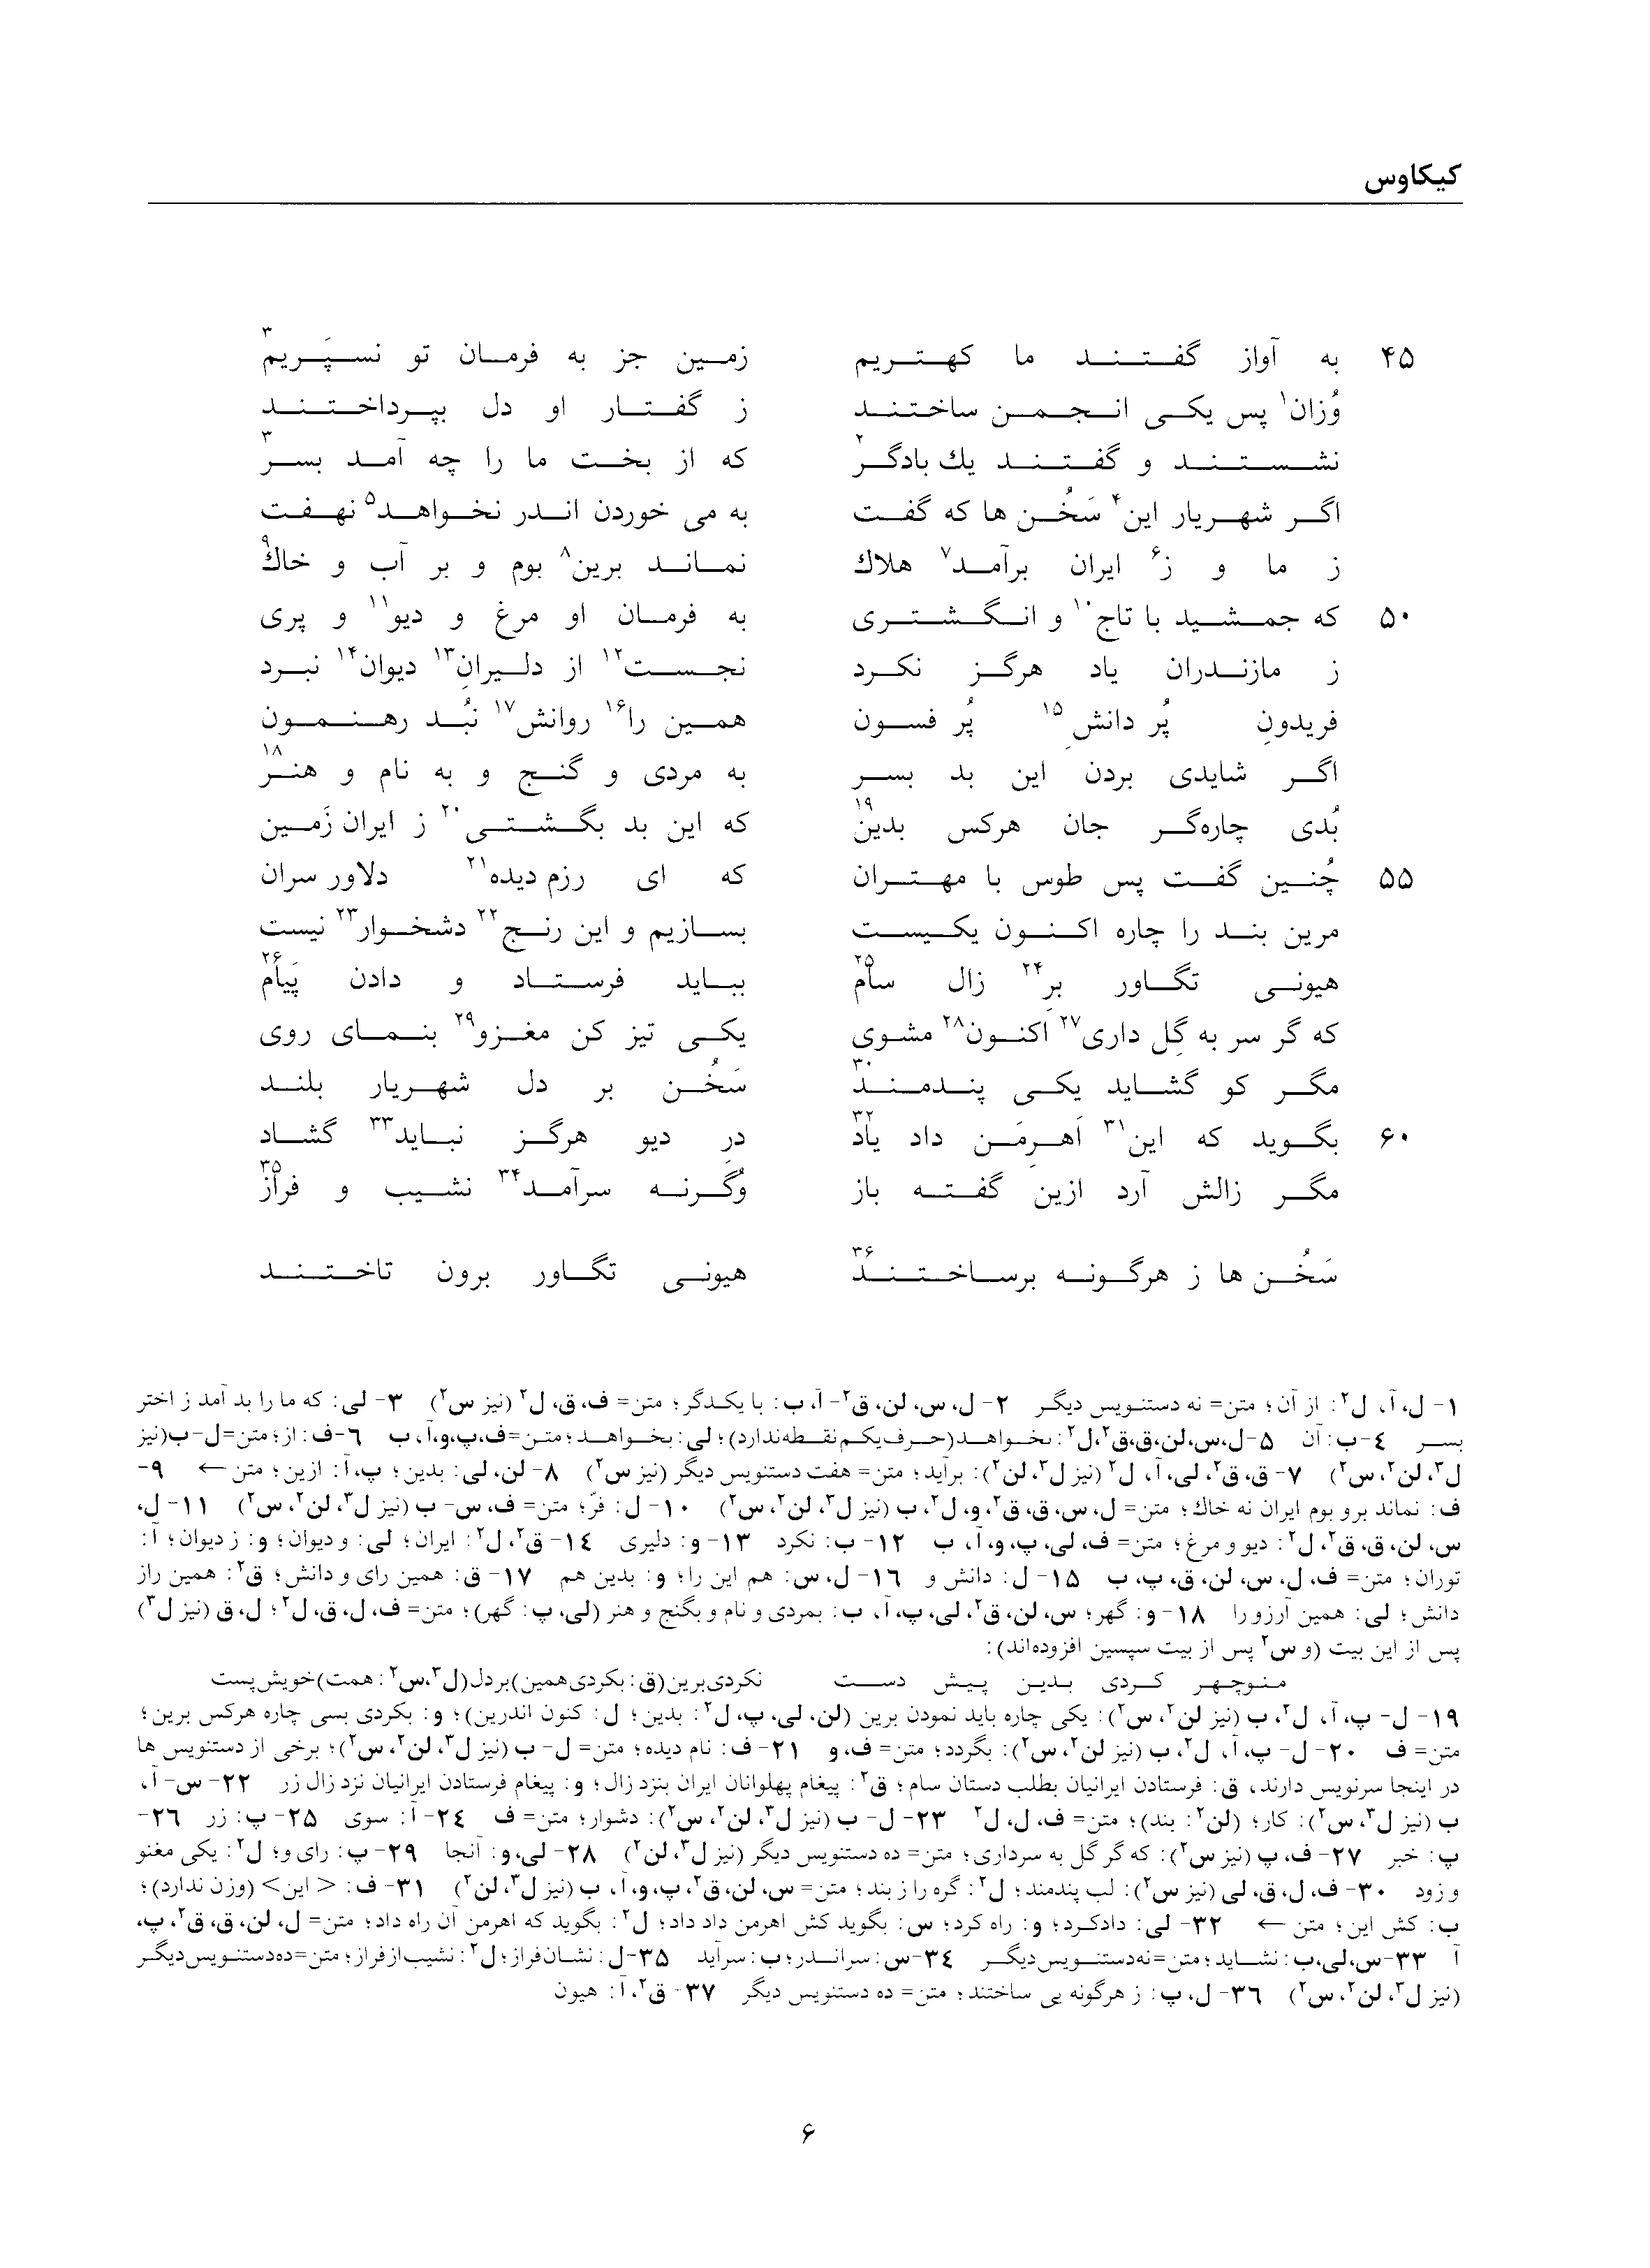 vol. 2, p. 6